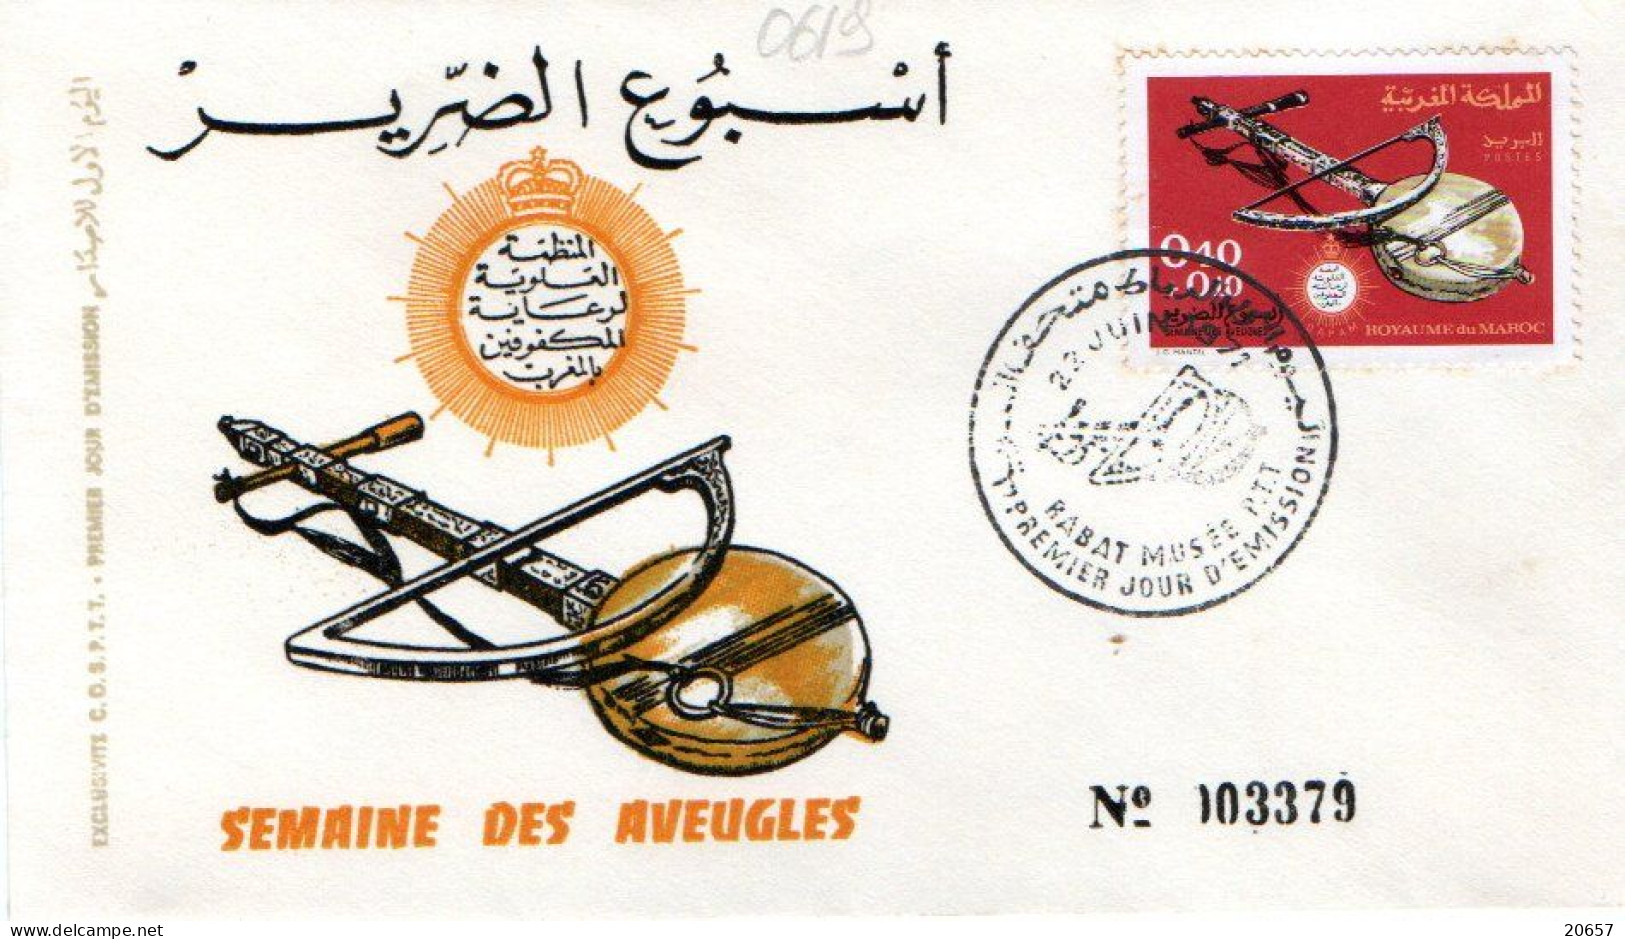 Maroc Al Maghrib 0619 Fdc Cécité, Semaine Des Aveugles, Instrument De Musique à Cordes - Handicap